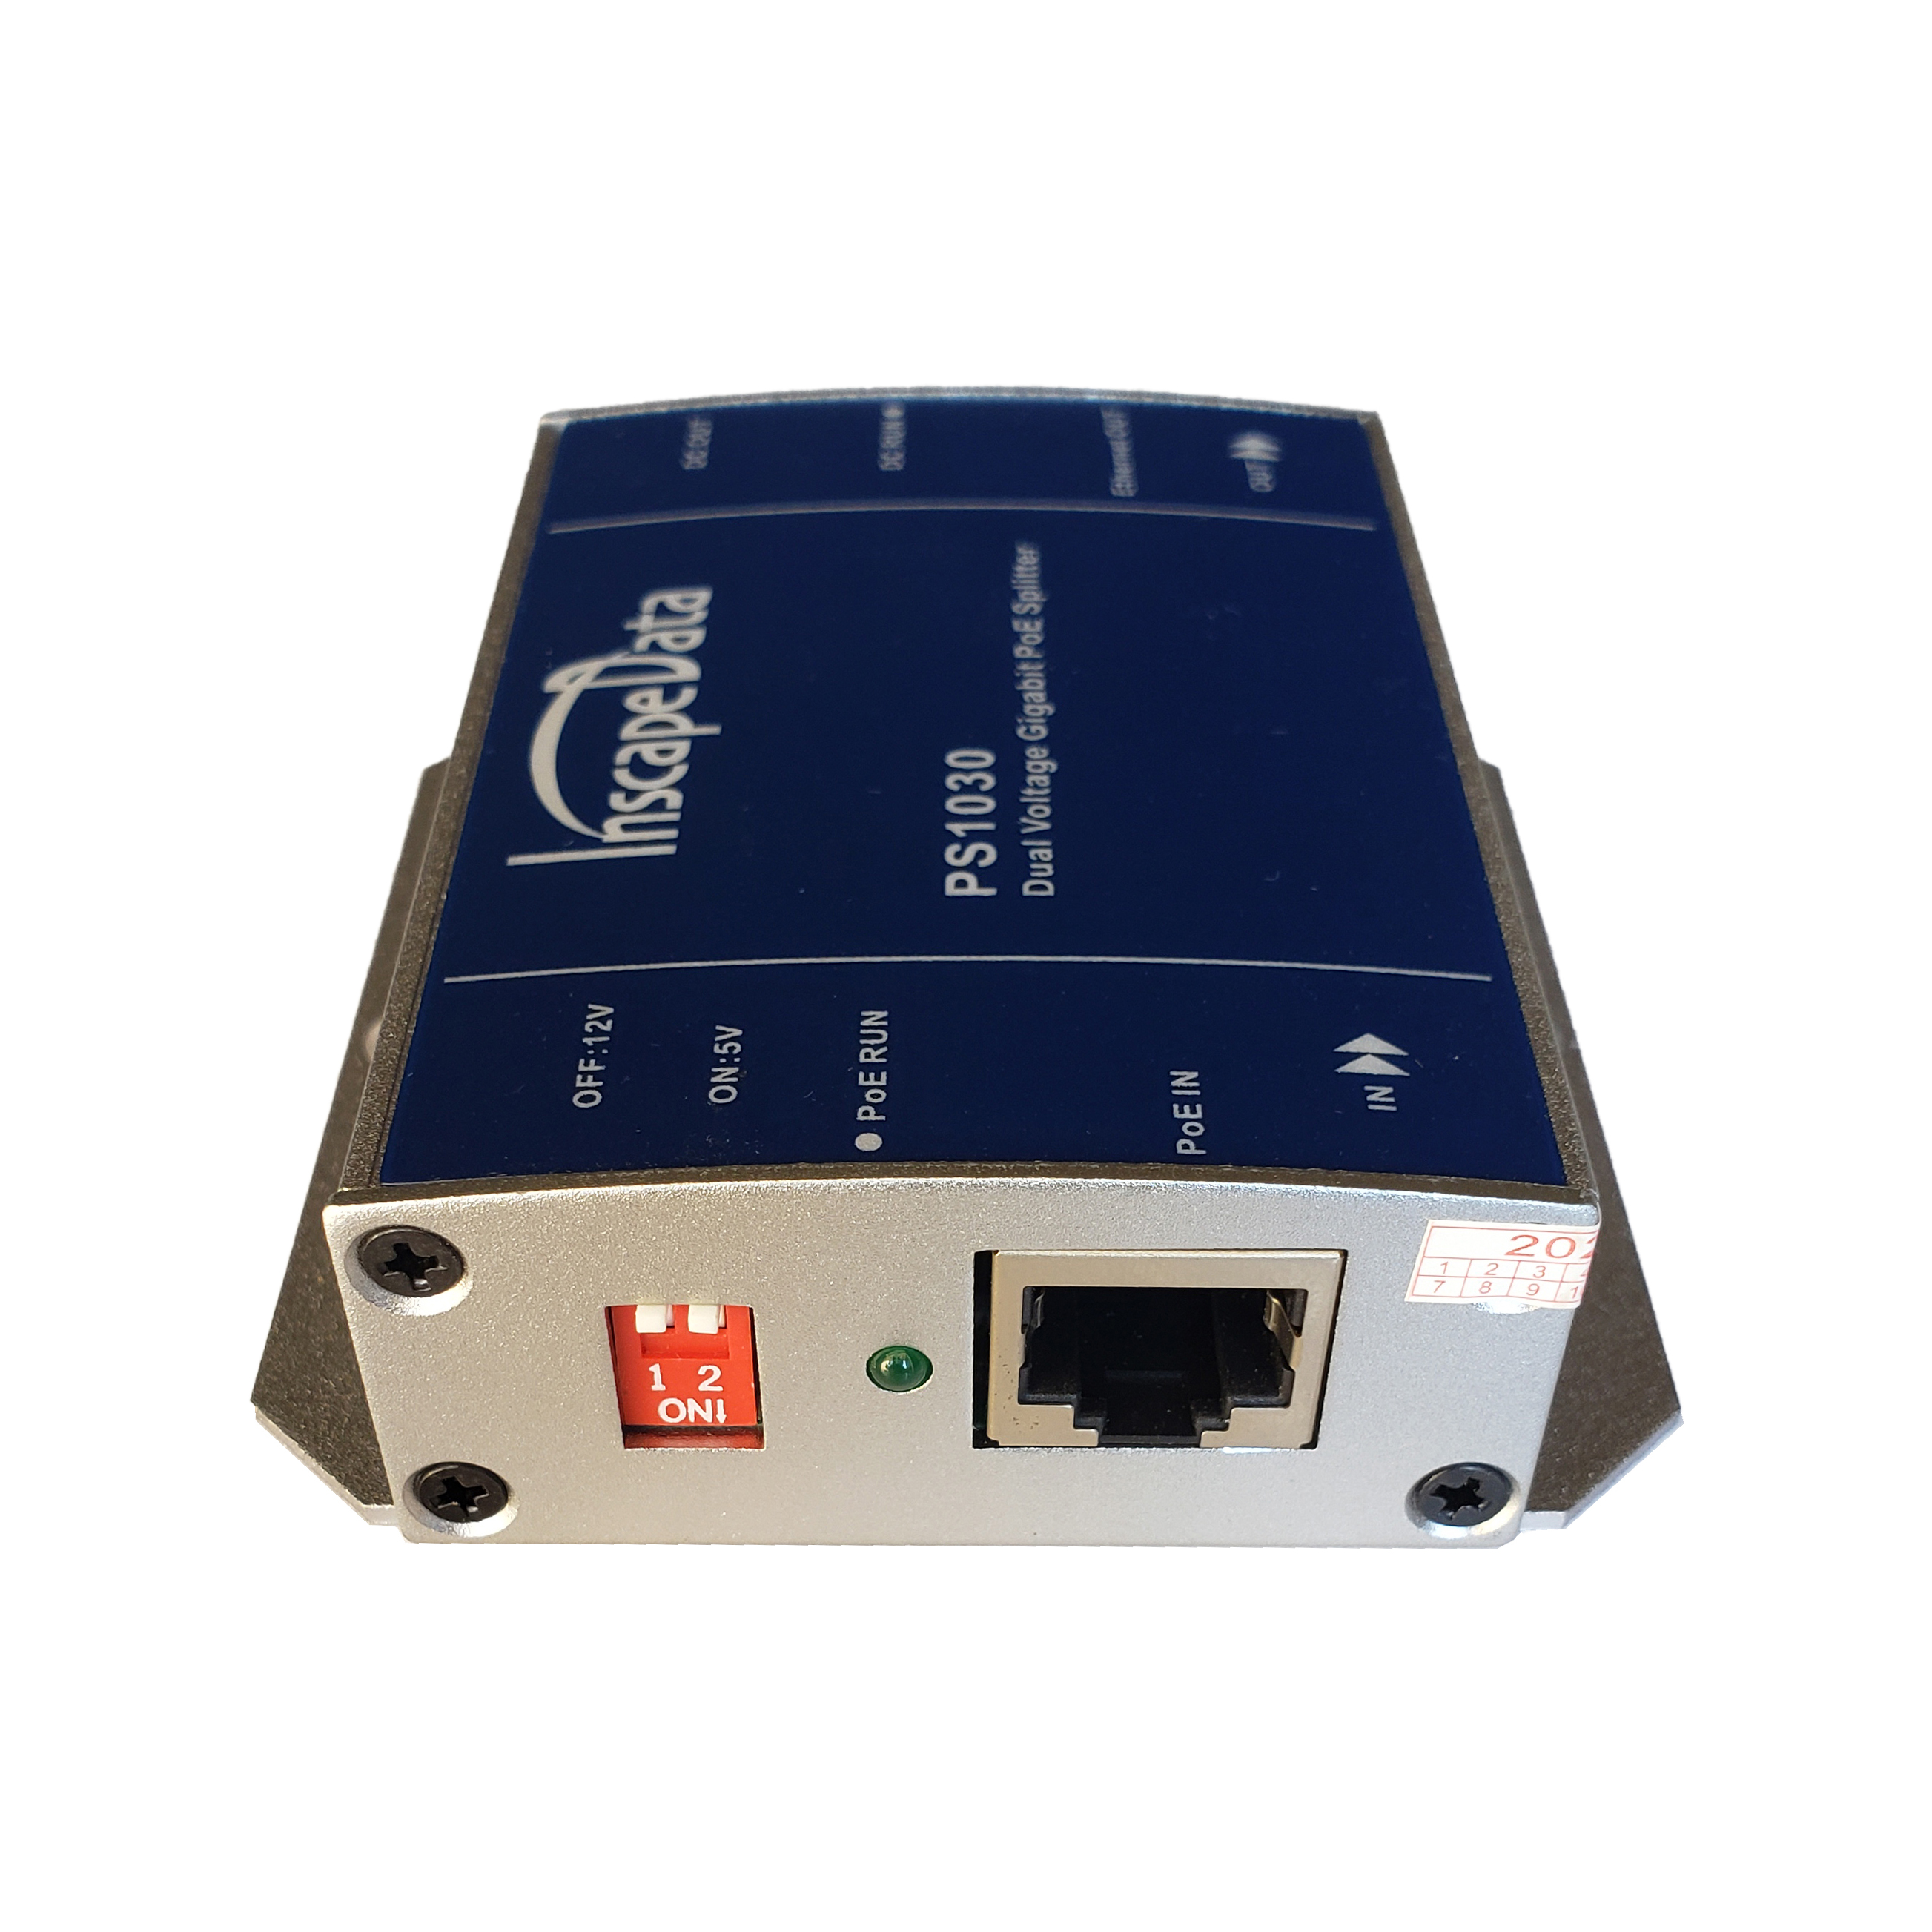 Outdoor Gigabit & 2.5Gb PoE Injectors: PIS2030 2-Port Outdoor 802.3at  Gigabit PoE Injector, 30W PoE Output